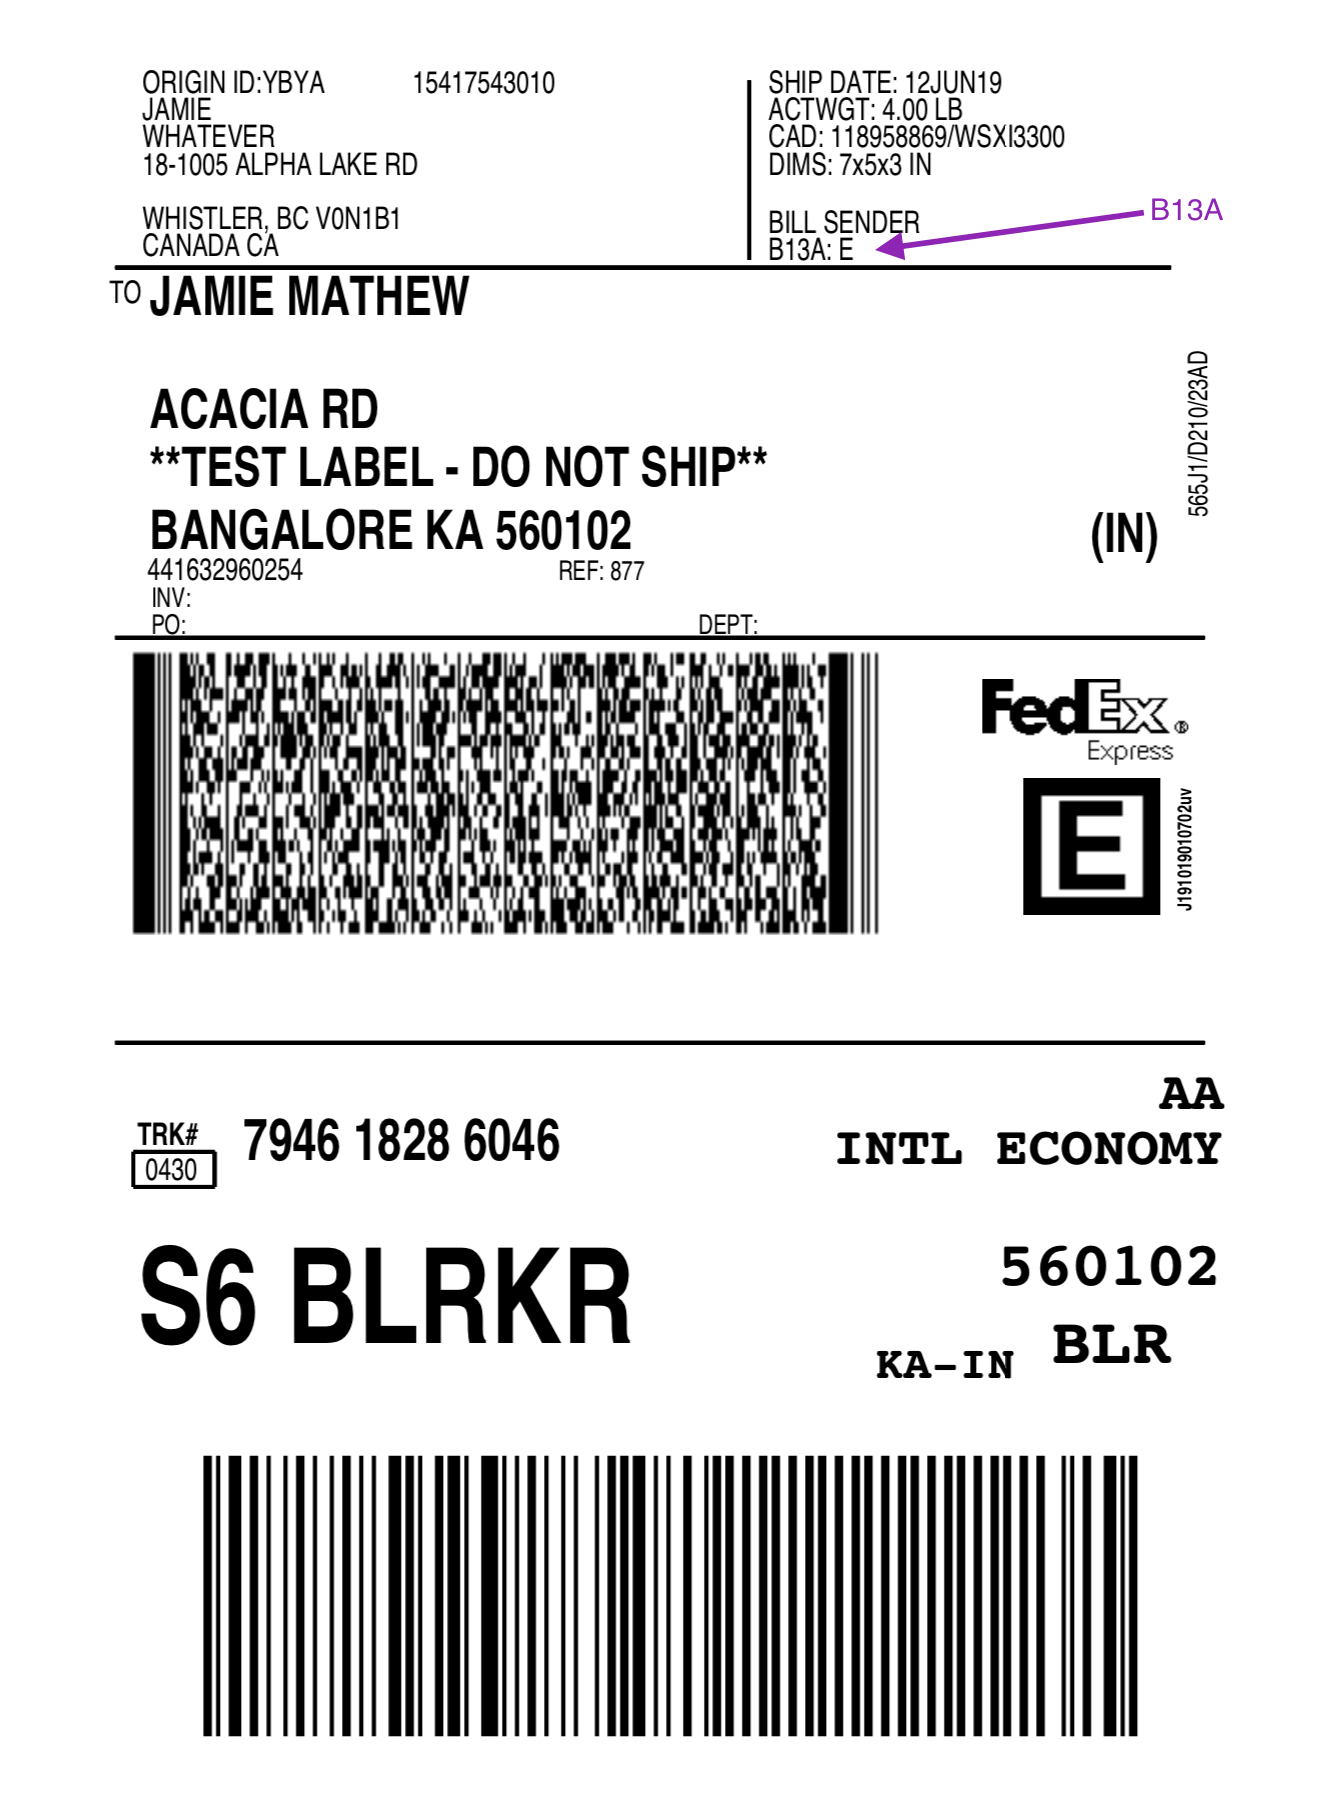 fedex shipping label